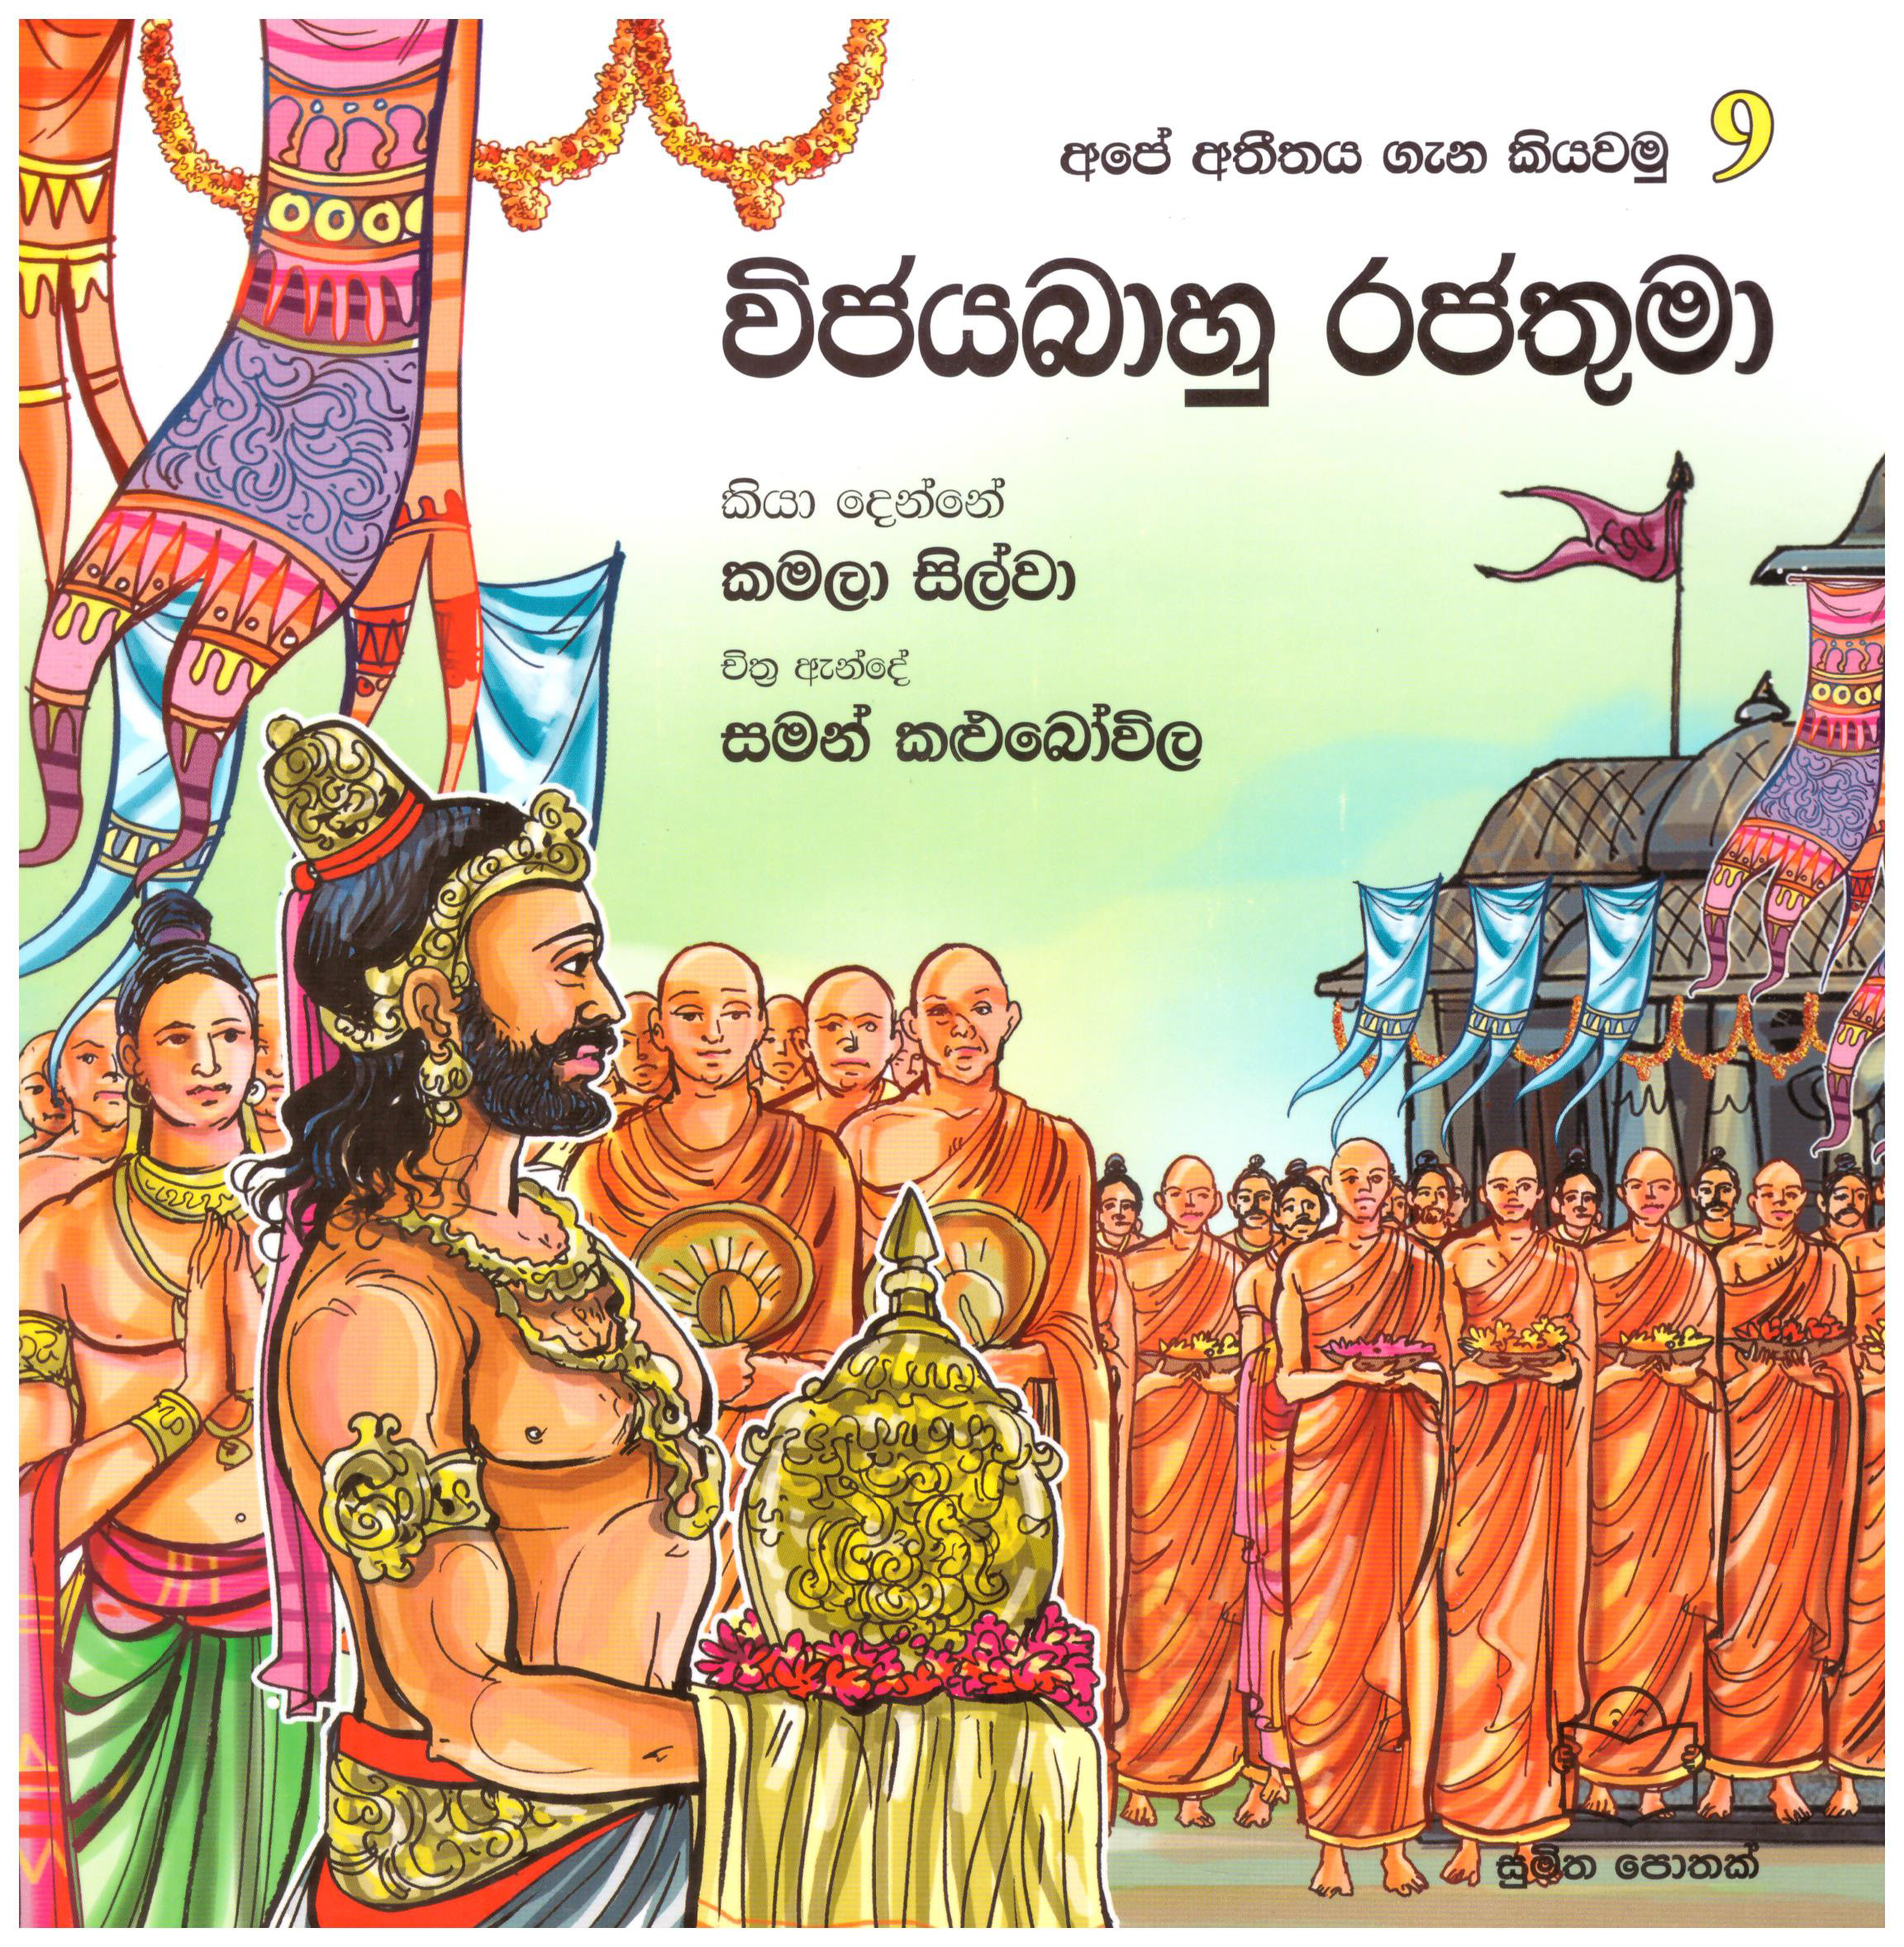 Ape Atitaya gana Kiyawamu 9 -  Vijayabahu Rajathuma